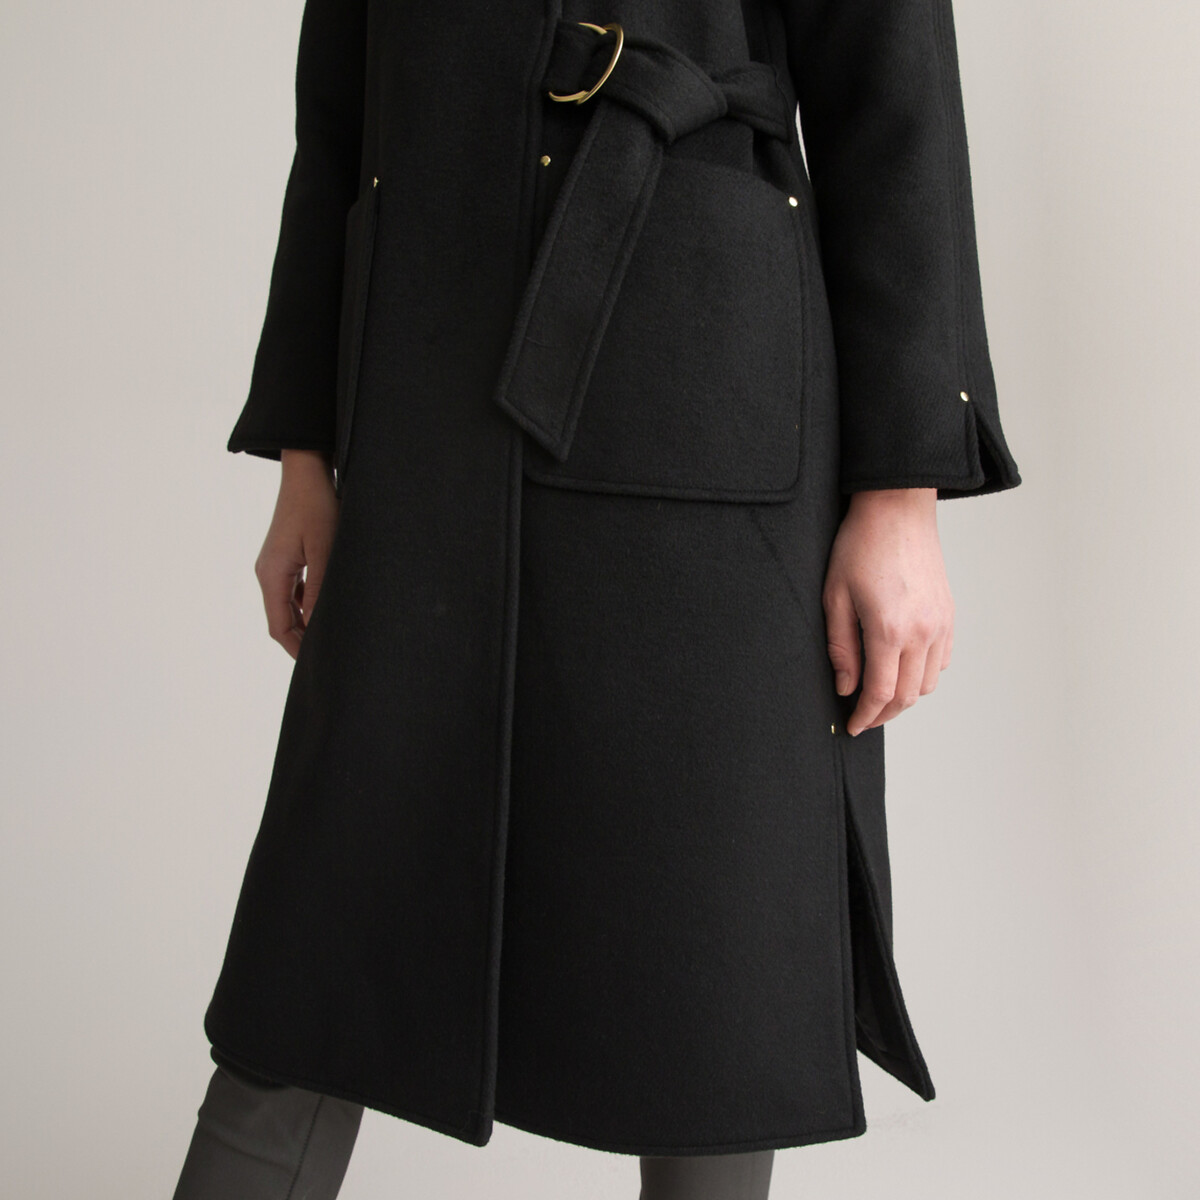 Пальто Длинное асимметричное с завязками 46 (FR) - 52 (RUS) черный LaRedoute, размер 46 (FR) - 52 (RUS) Пальто Длинное асимметричное с завязками 46 (FR) - 52 (RUS) черный - фото 3